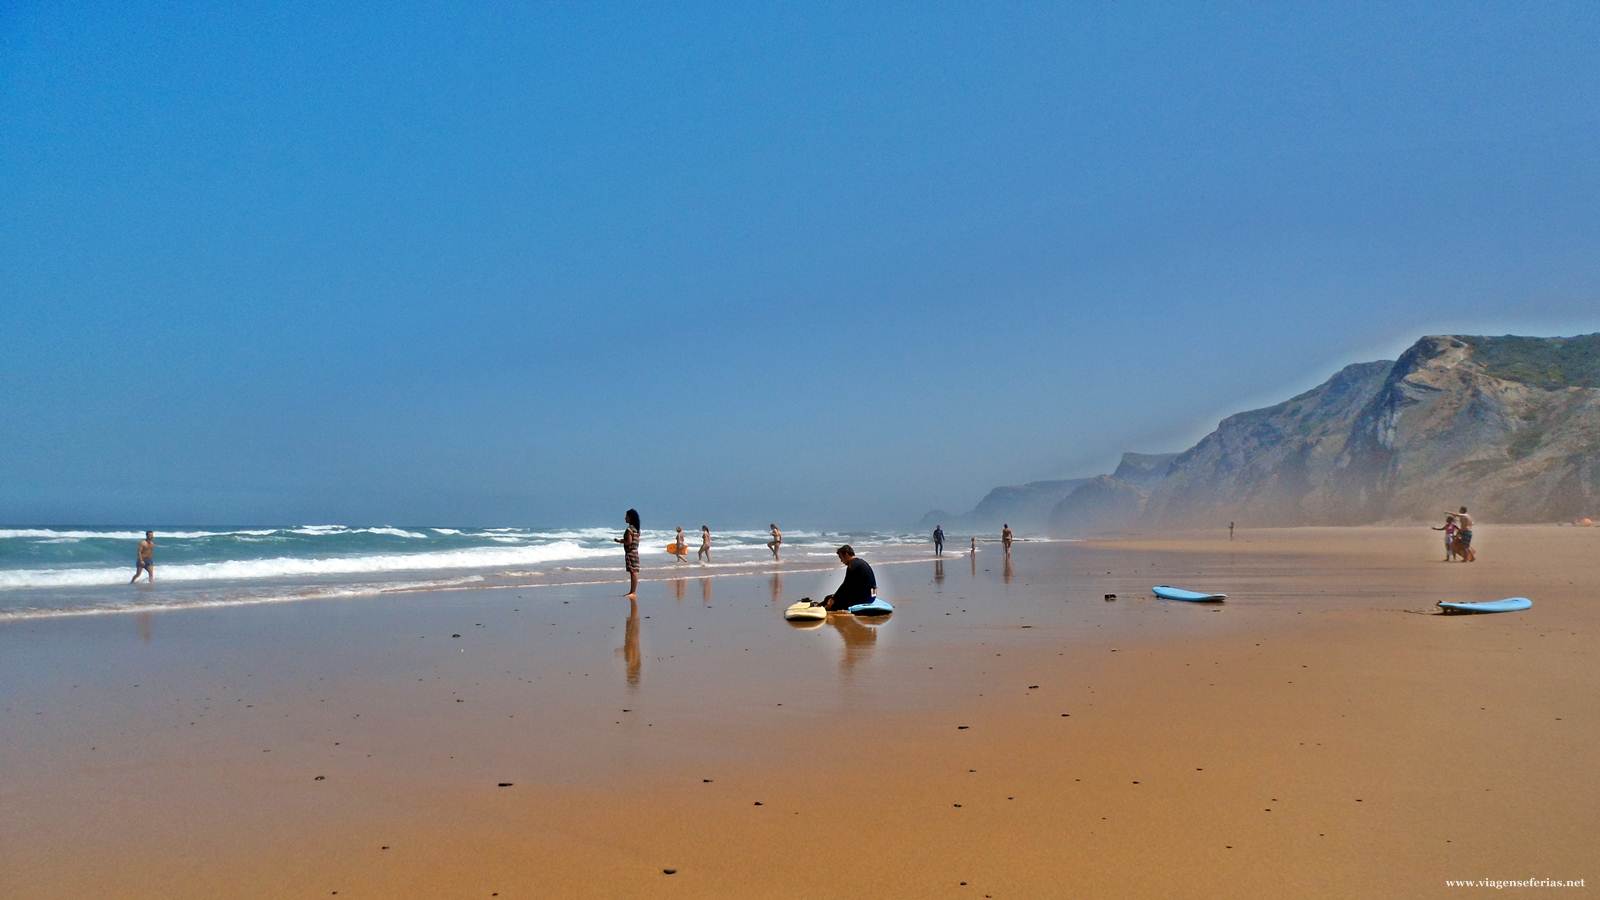 Surfistas e pranchas de surf na praia da Cordoama no Algarve